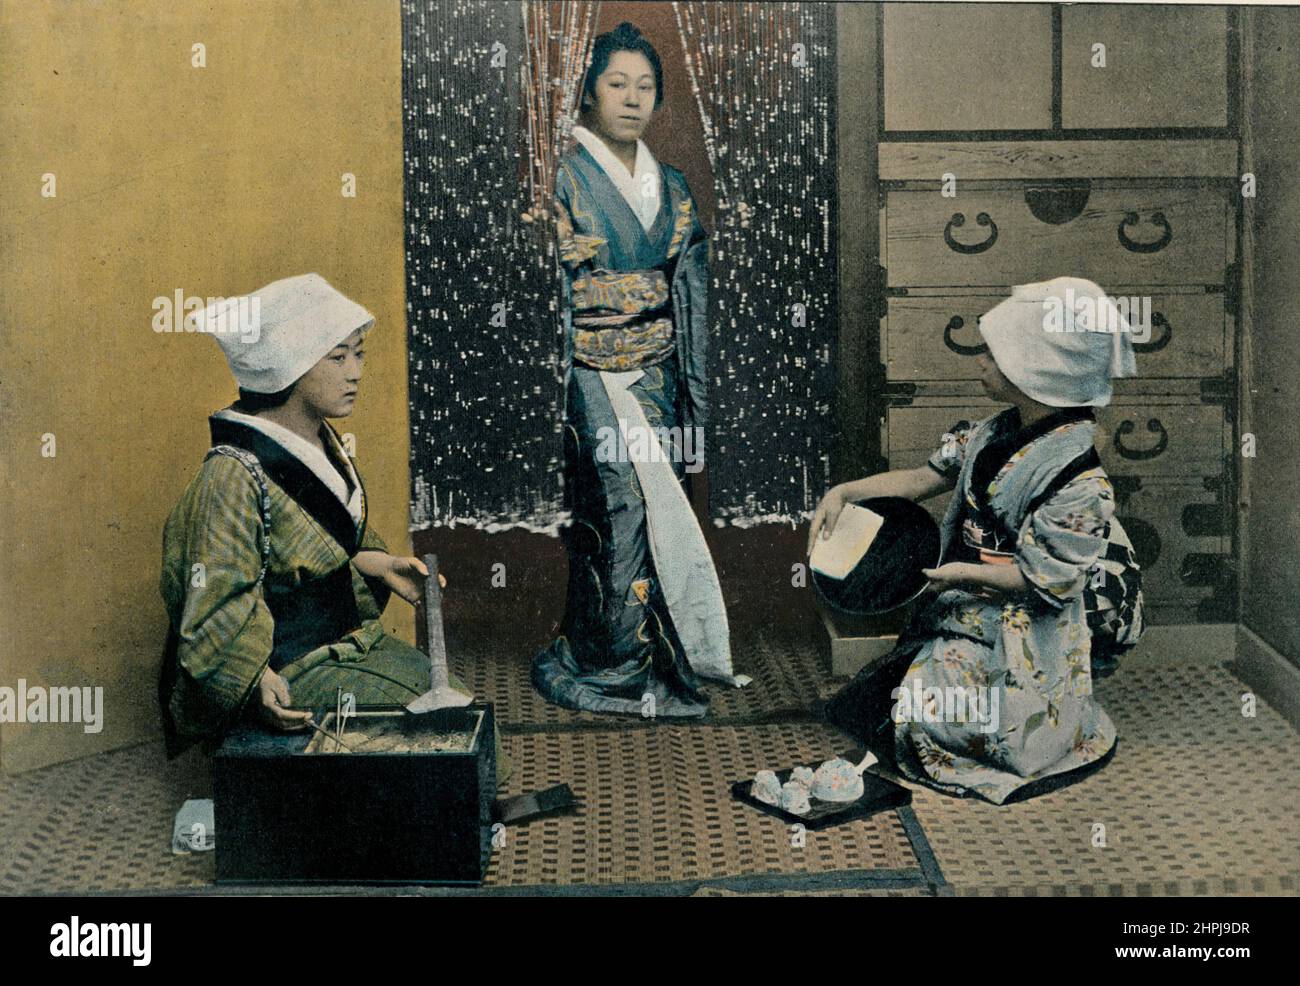 LE JOUR DU RECURAGE Au Japon III 1895 - 1900 (4) - 19. Jahrhundert französischer Farbfotografiedruck Stockfoto